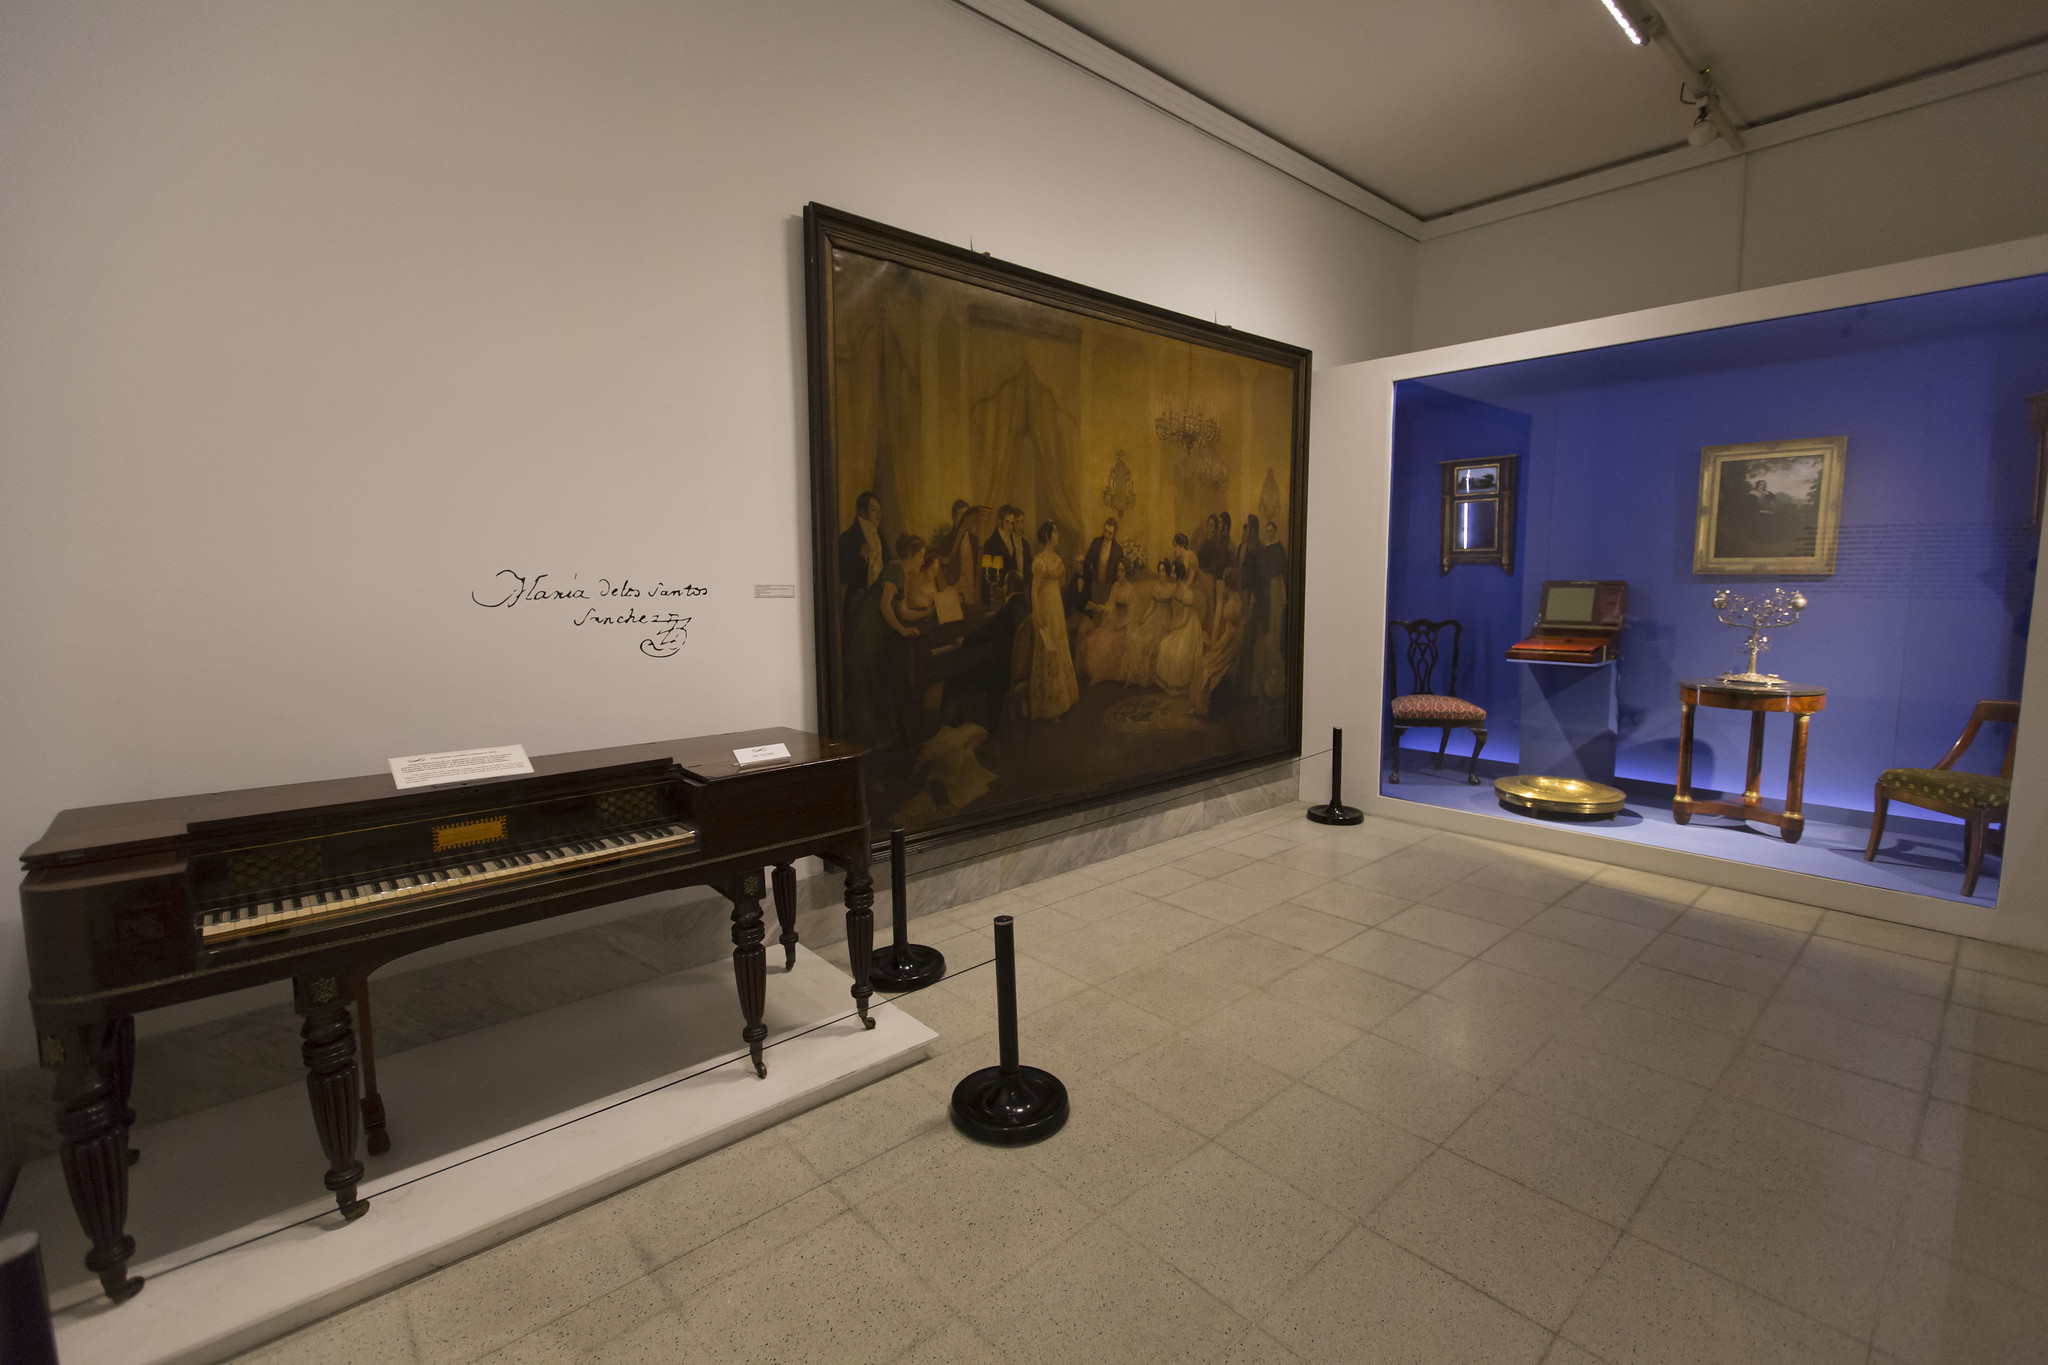 El pianoforte de Mariquita y el óleo de Subercaseaux ambos se exhiben en el Museo Histórico Nacional